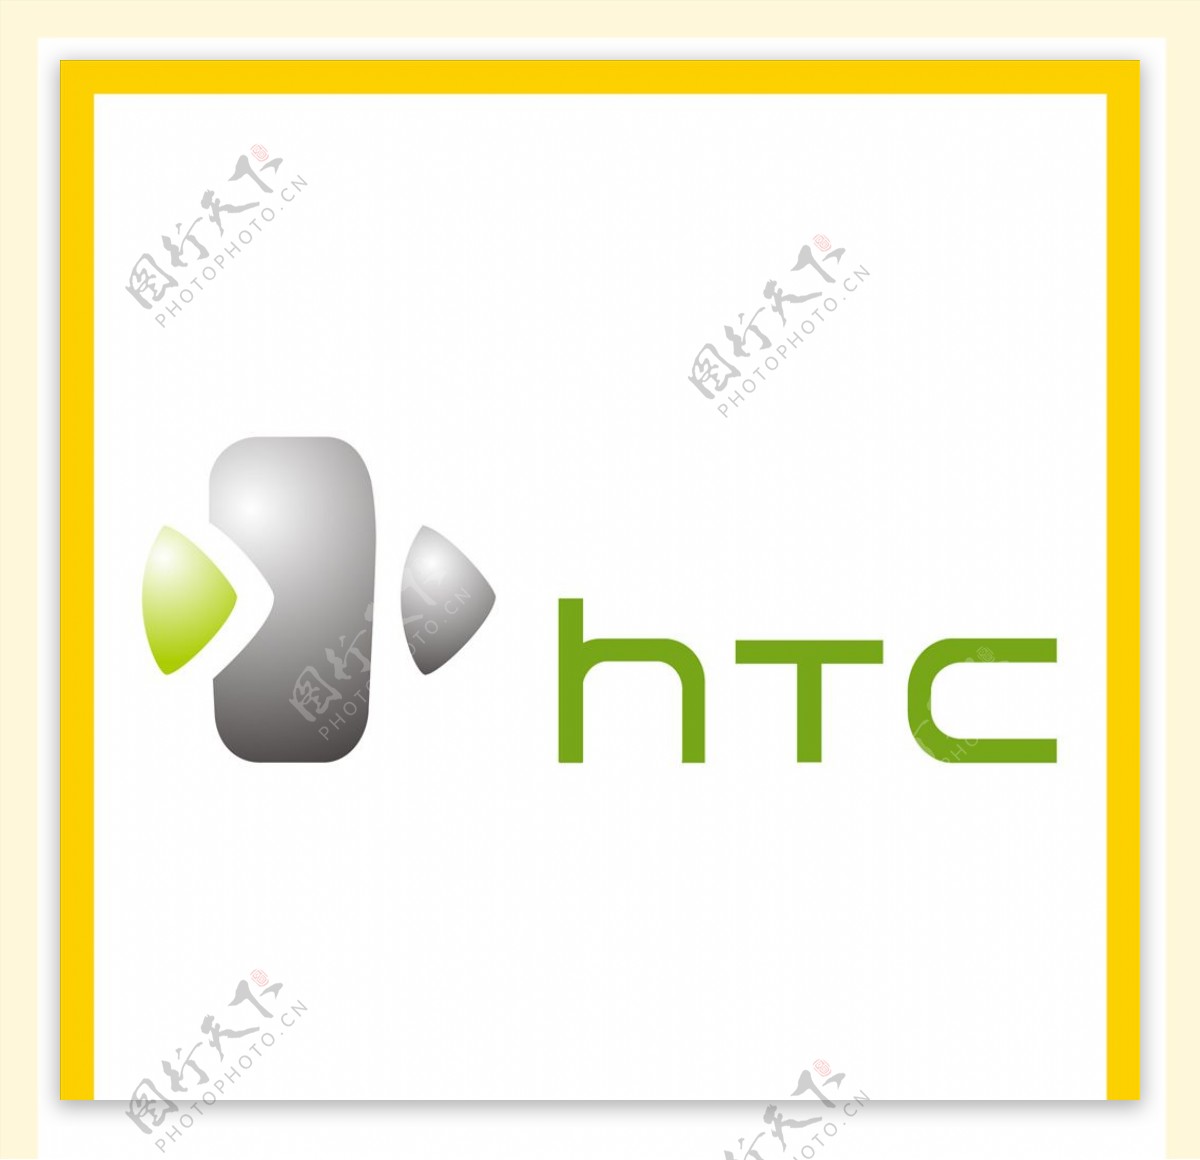 HTC手机